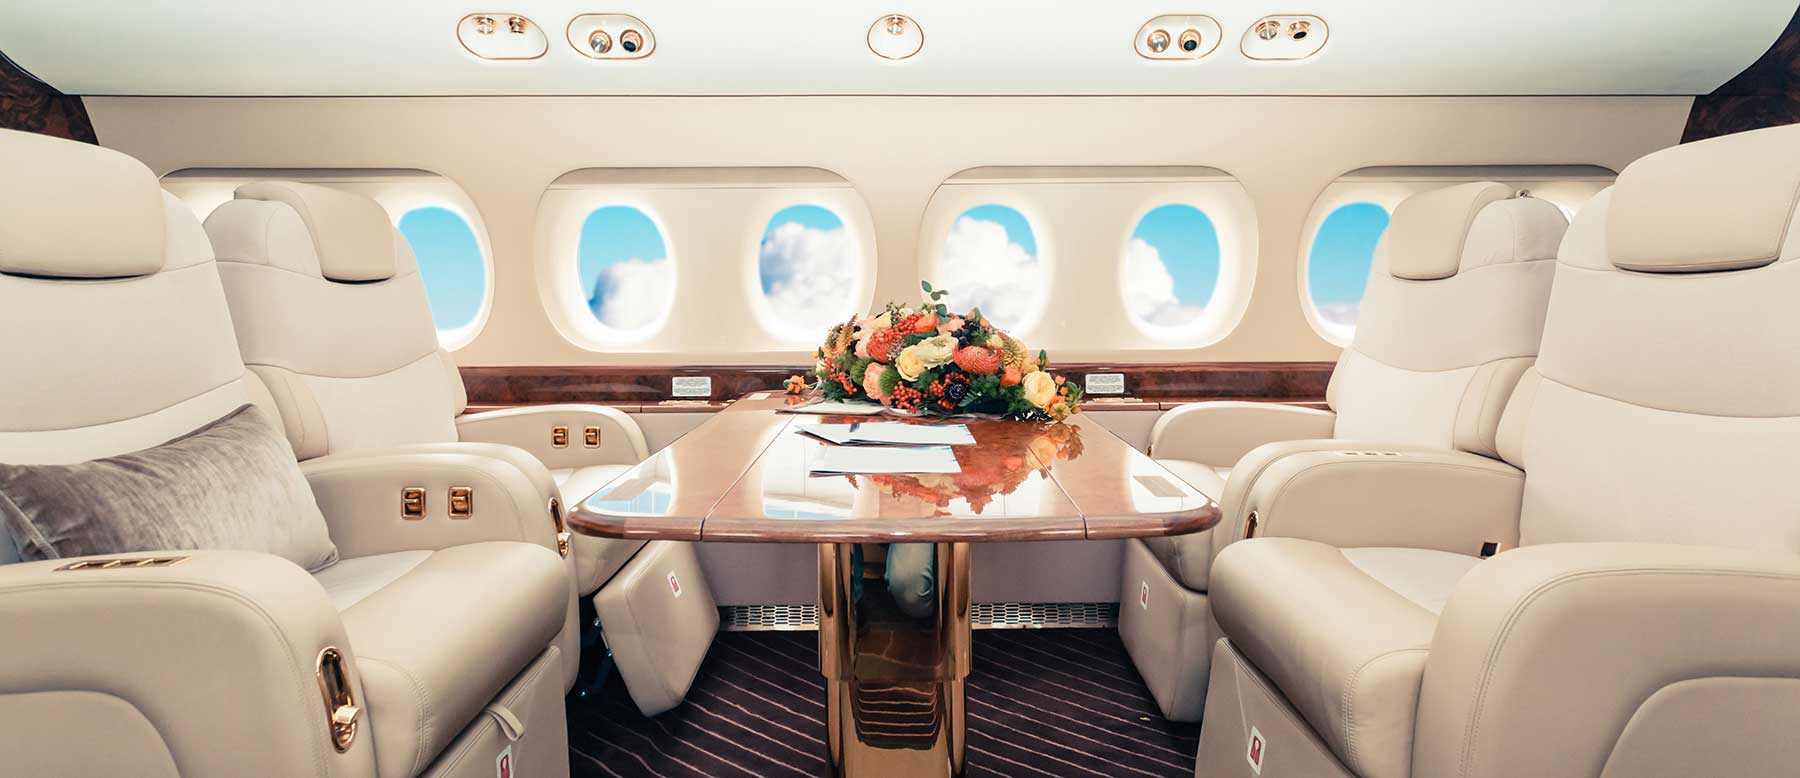 Tutto sugli aerei più lussuosi al mondo: dai modelli agli interni